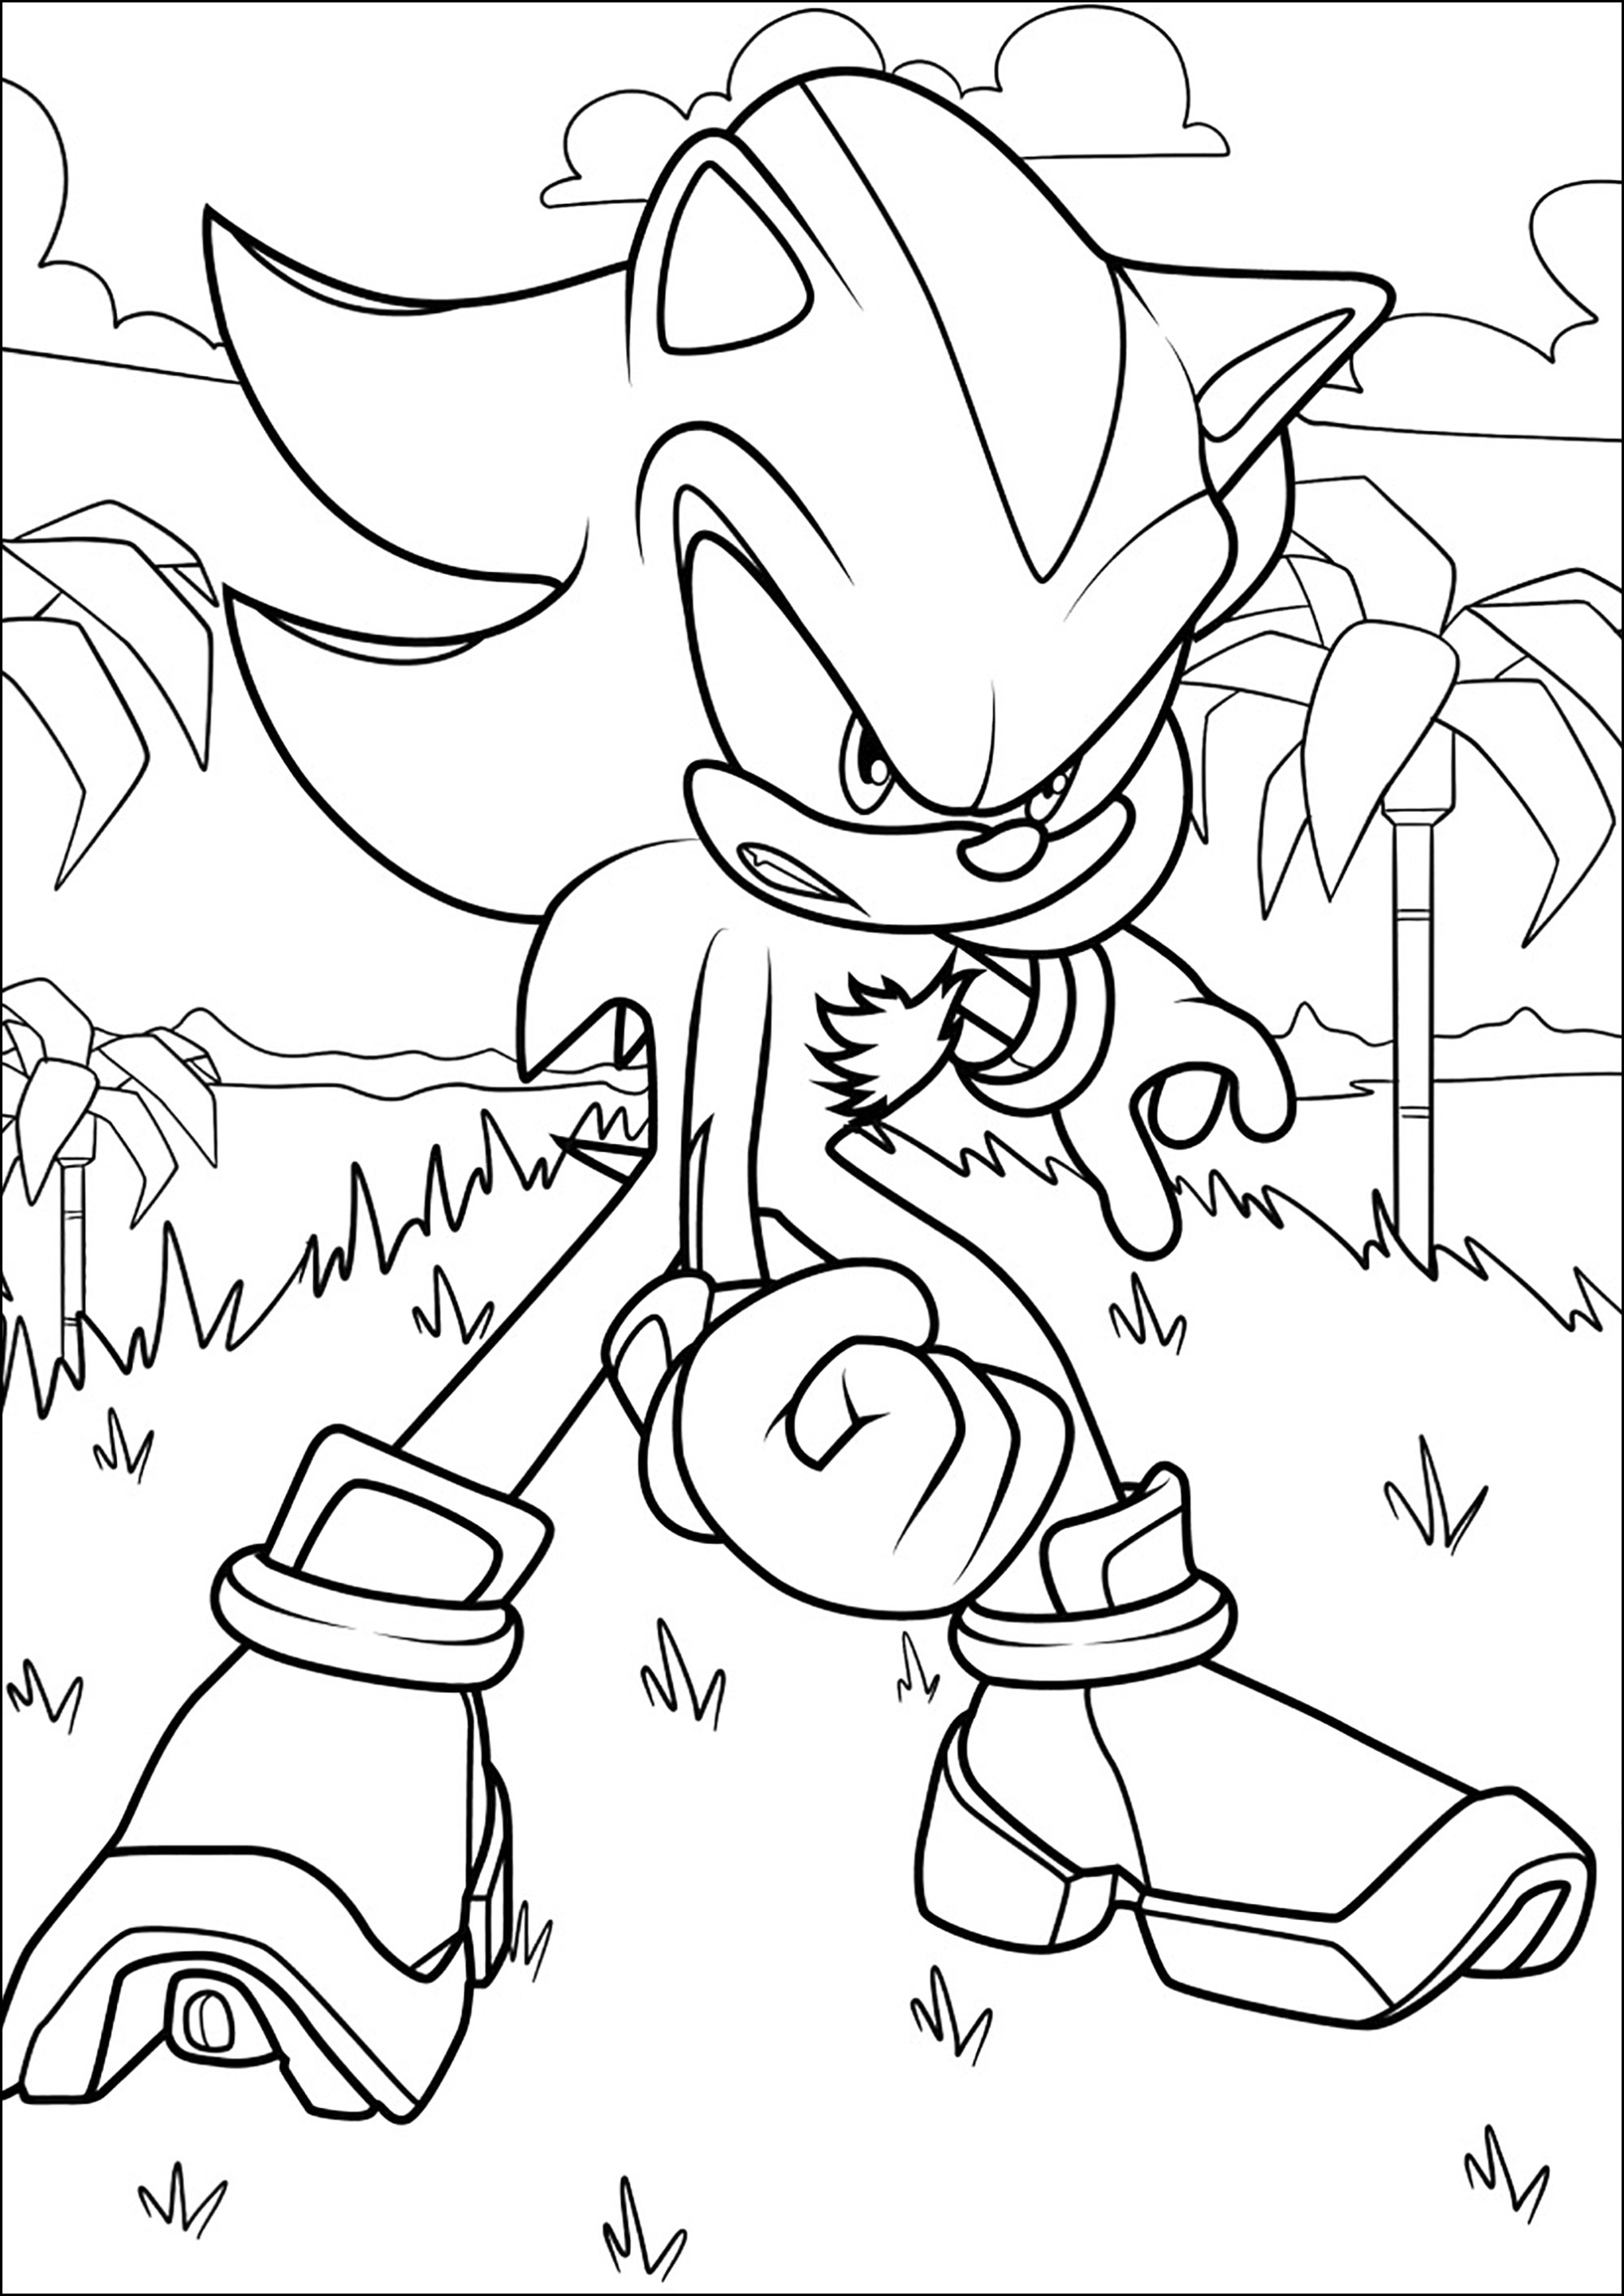 Shadow the hedgehog com Sonic - Sonic - Just Color Crianças